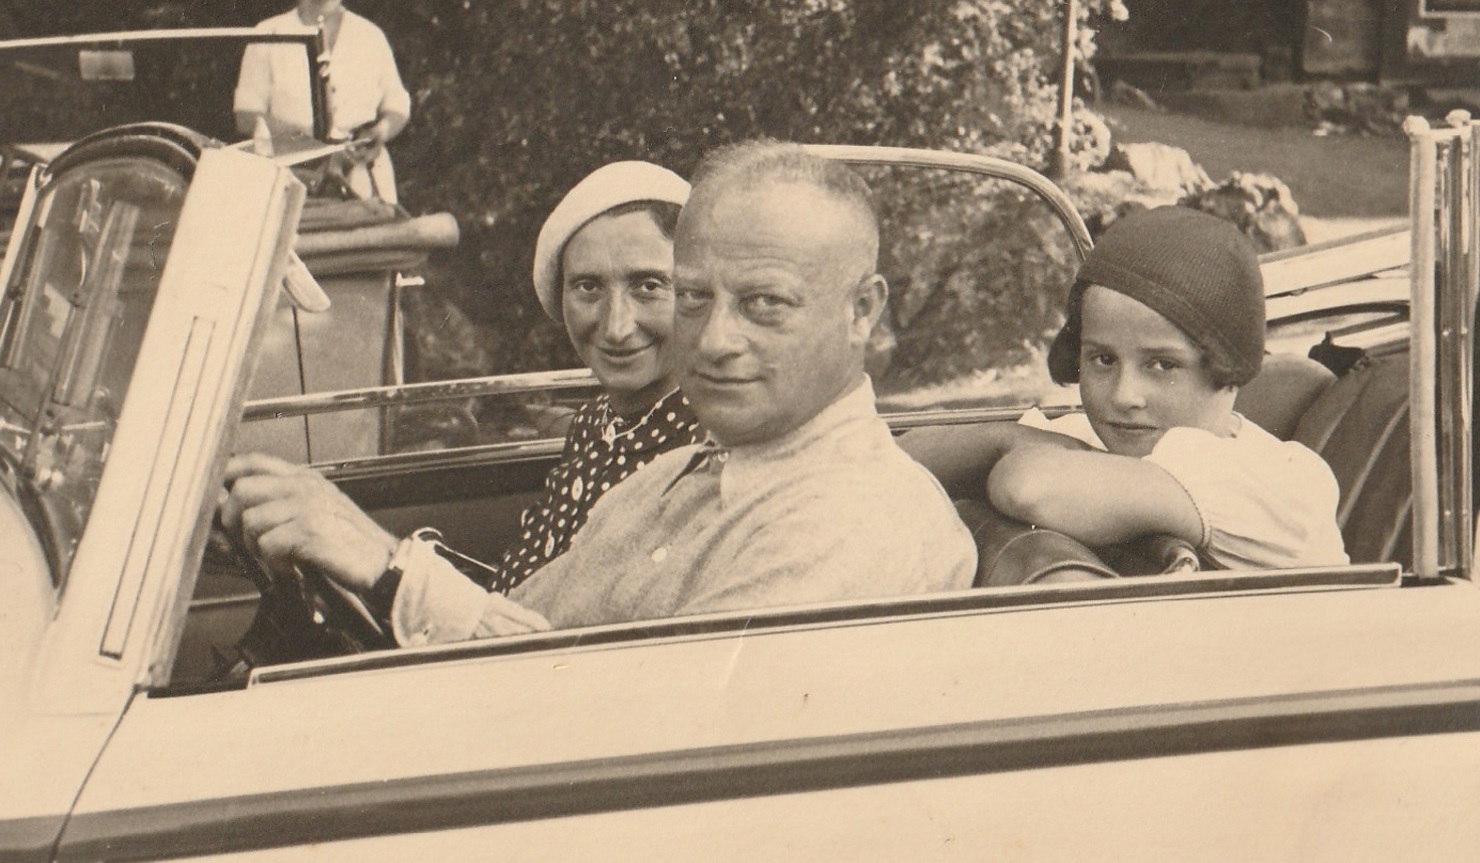 Sallo, Annemarie und Ingeborg in the 1930s © Kampmann family archive